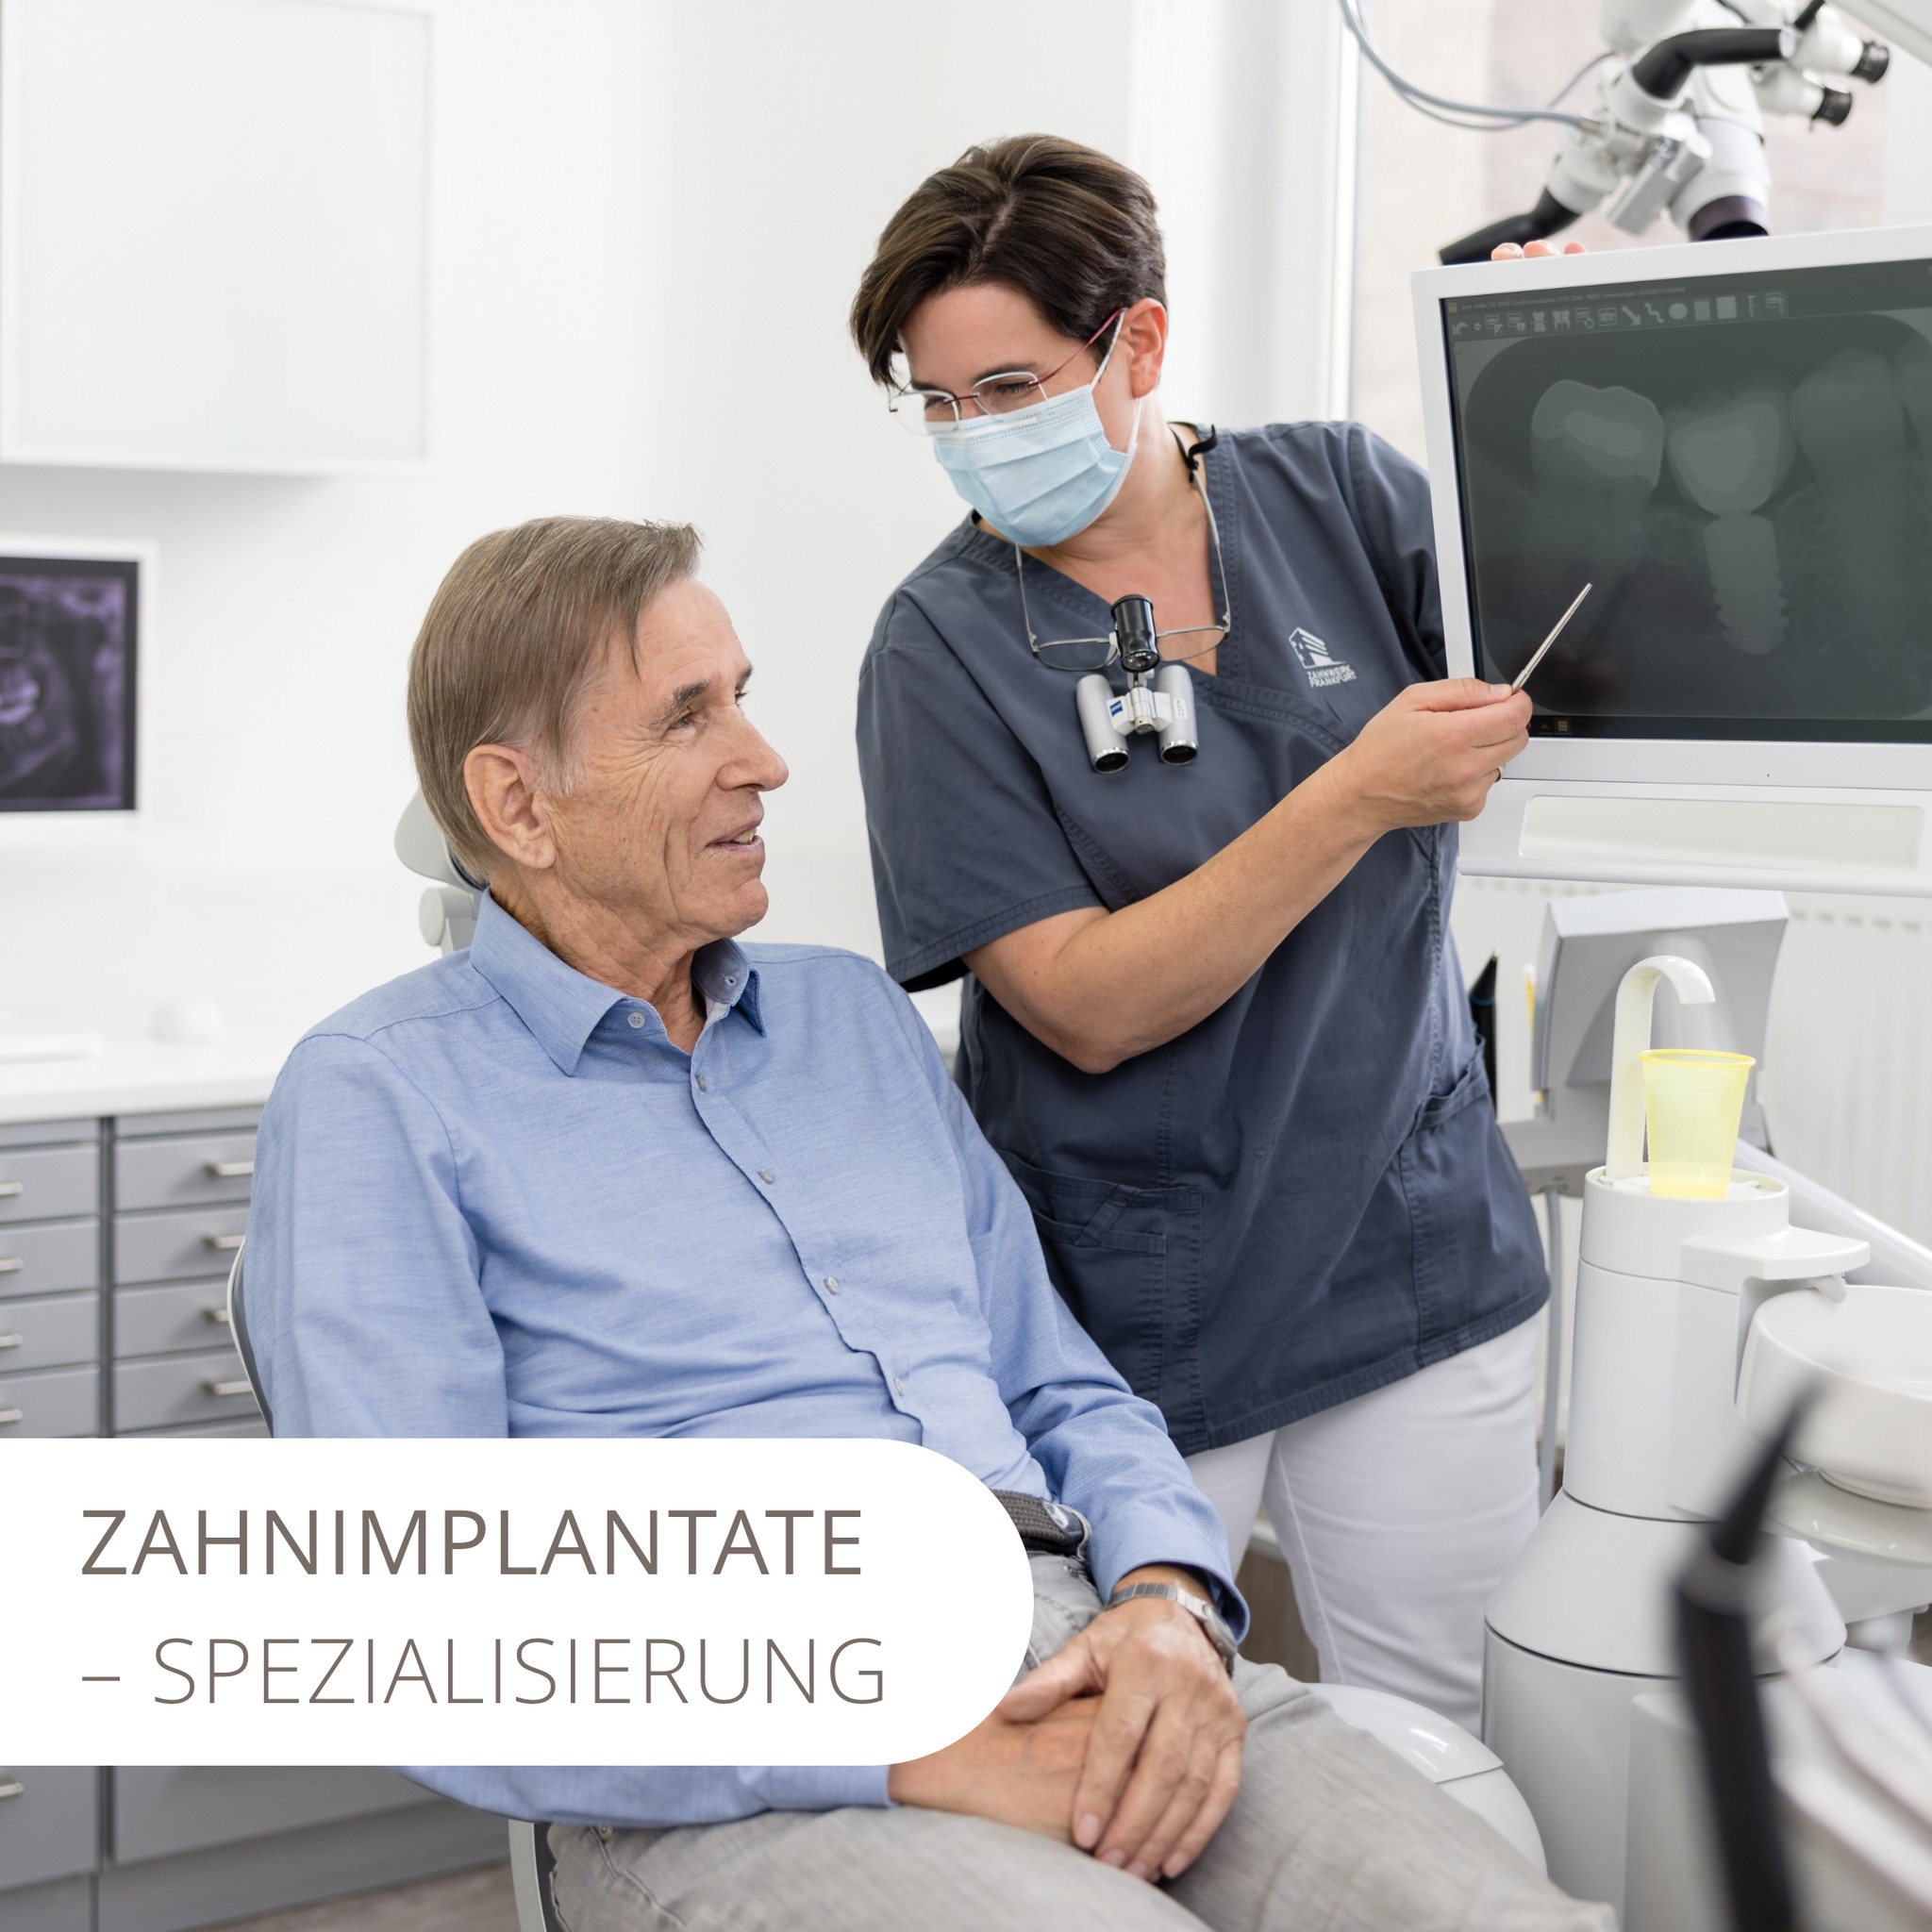 Du beschäftigst Dich mit dem Thema #Zahnimplantate und bist auf der Suche nach einem kompetenten Experten auf dem Gebiet der #Implantologie im Raum #Frankfurt? Als spezialisierte #Praxis bieten wir Dir mit Frau Dr. Isser 25 Jahre Erfahrung in der Implantologie und verfügen ebenfalls über ein eigenes Dentallabor. Du hast mehr Fragen zu dem Thema? Wir beraten Dich gerne. Jetzt Termin ausmachen . #dentallabor #zahnersatz #implantate #implantologie #zahnwerk #zahnmedizin #bestager #neuezähne #drittezähne